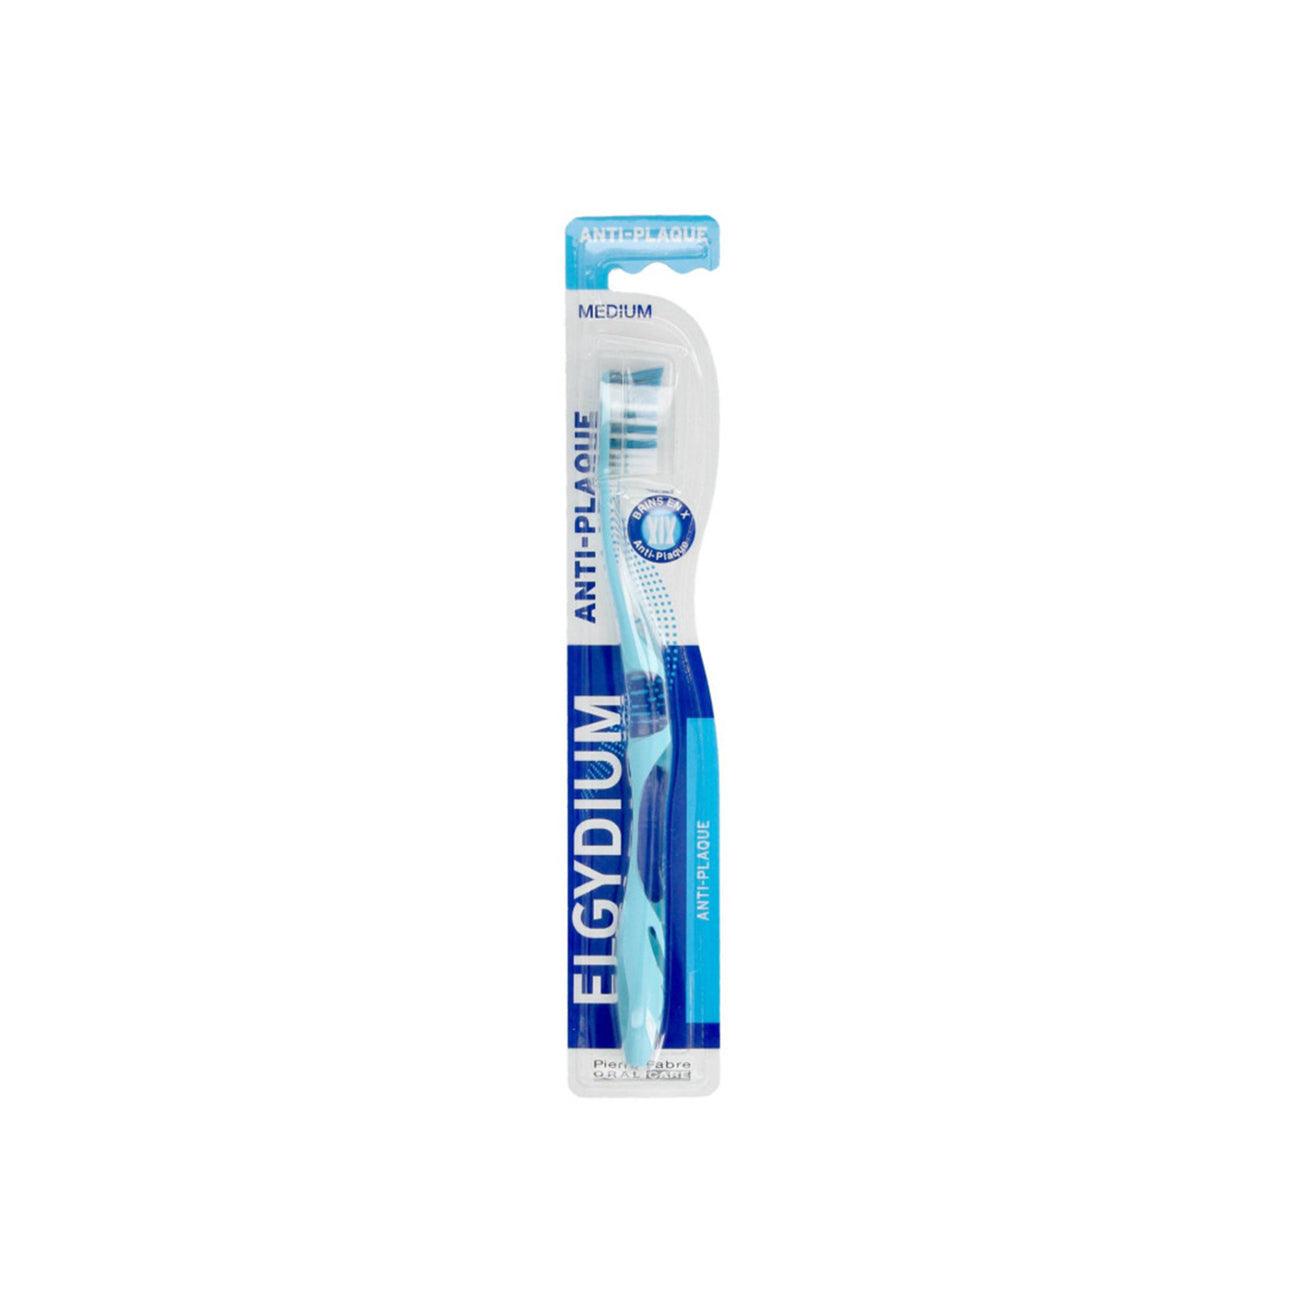 Elgydium
Anti-Plaque Medium Toothbrush